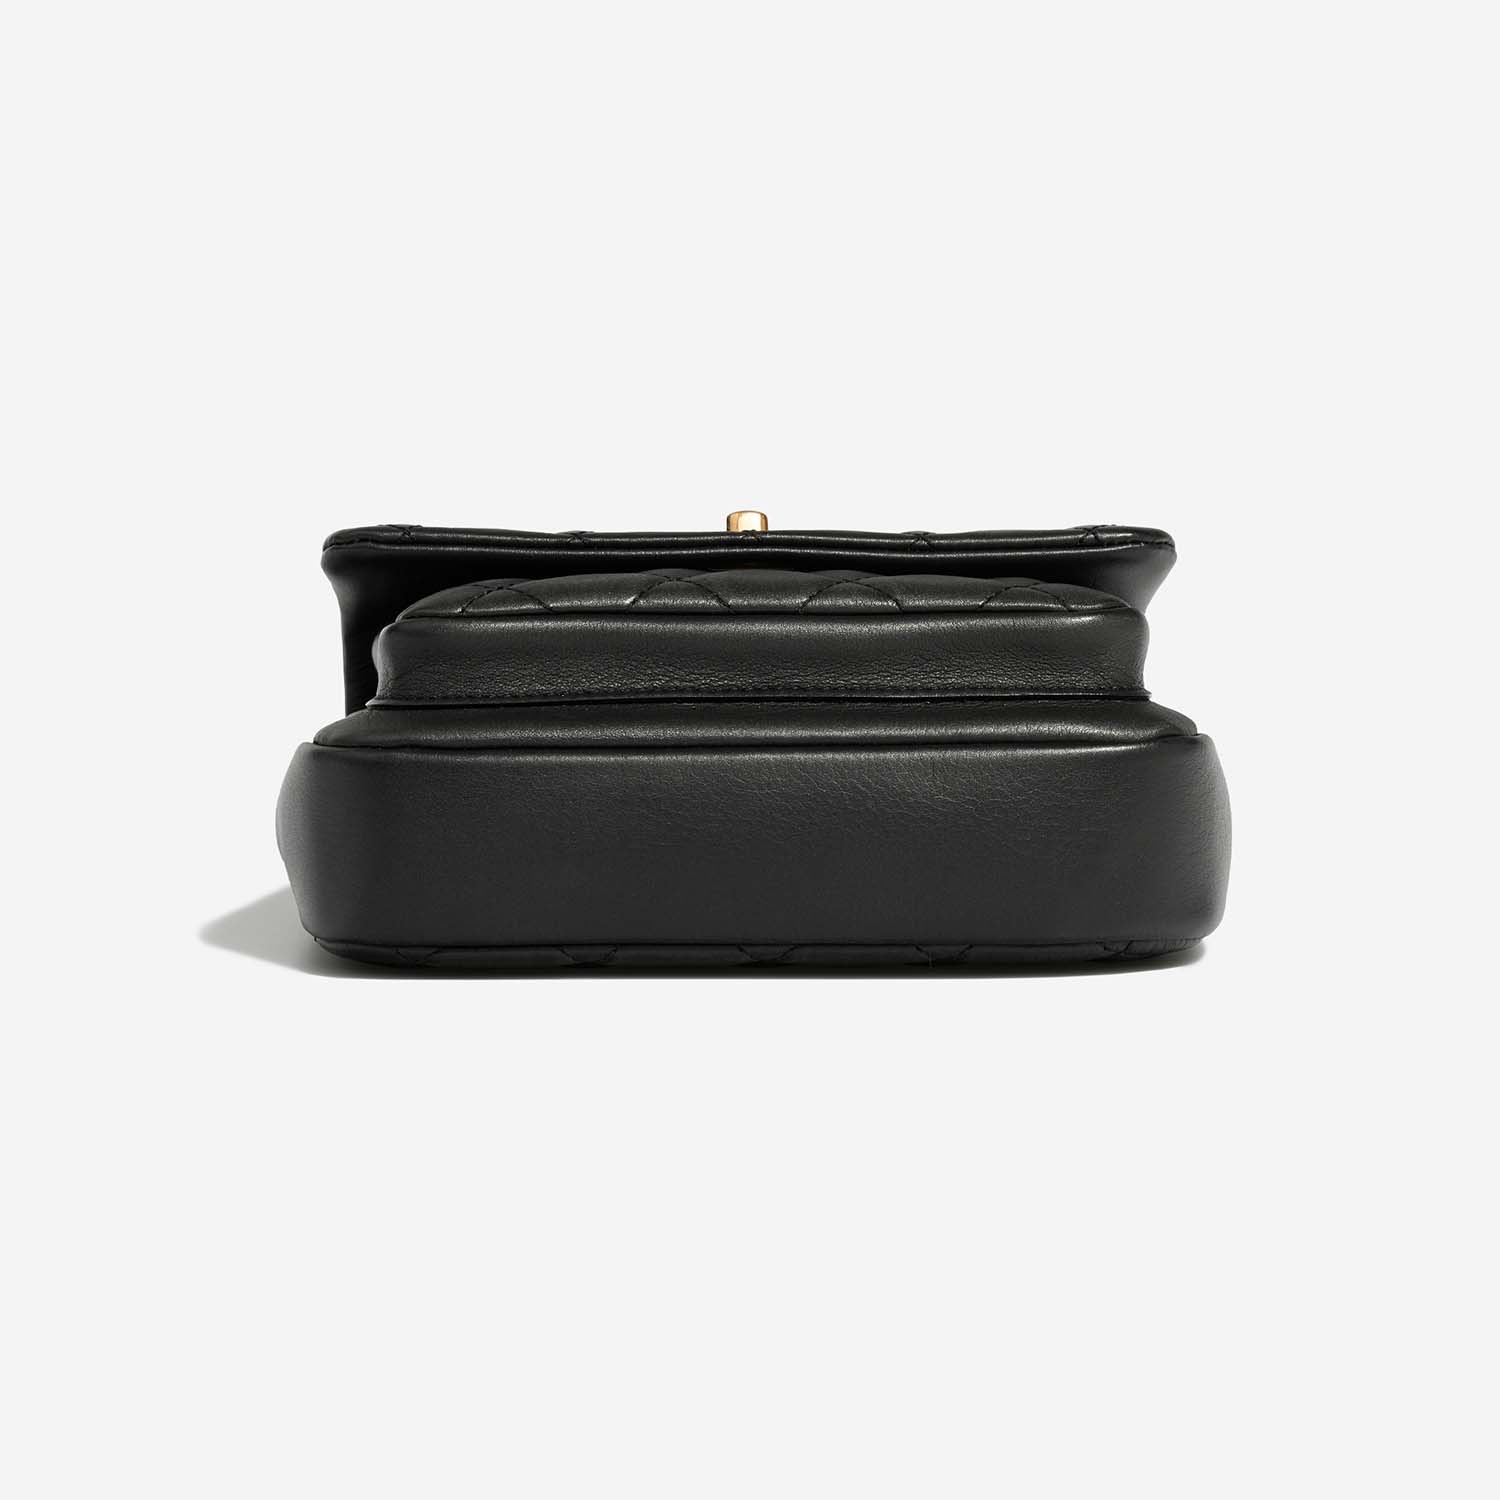 Chanel TimelessHandle Small Black Bottom | Vendez votre sac de créateur sur Saclab.com